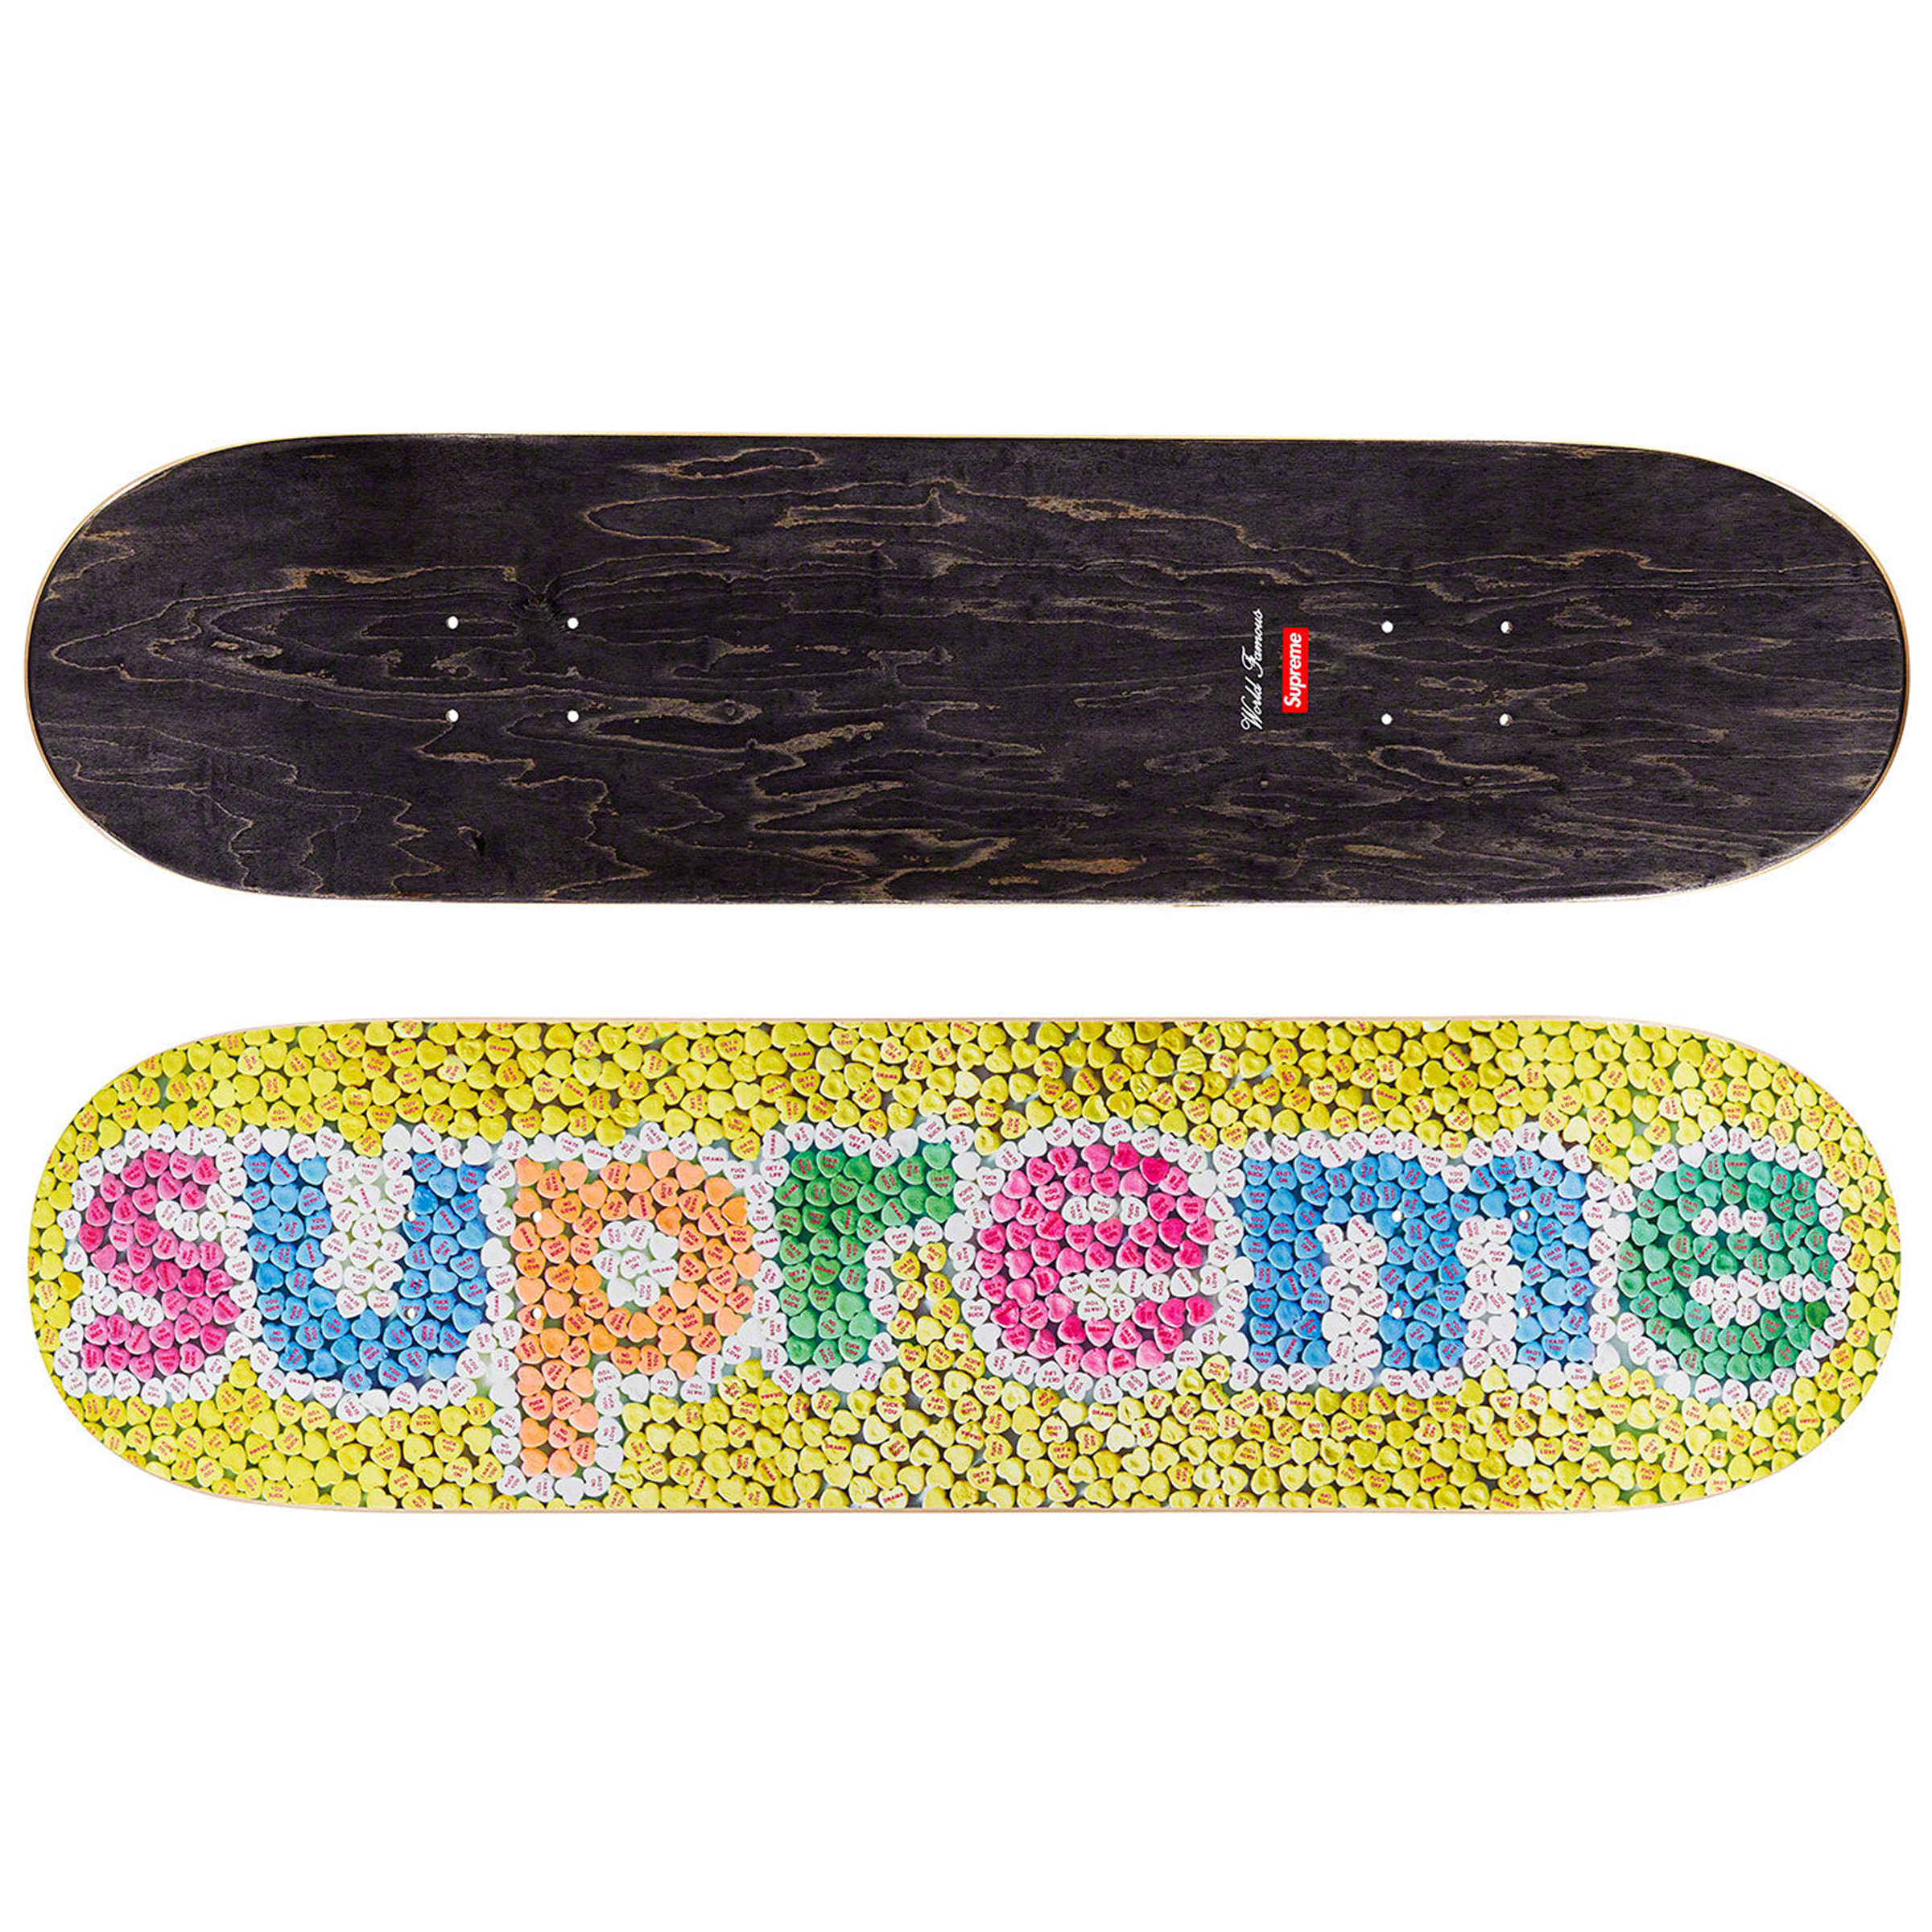 Supreme "Candy Hearts" Skateboard